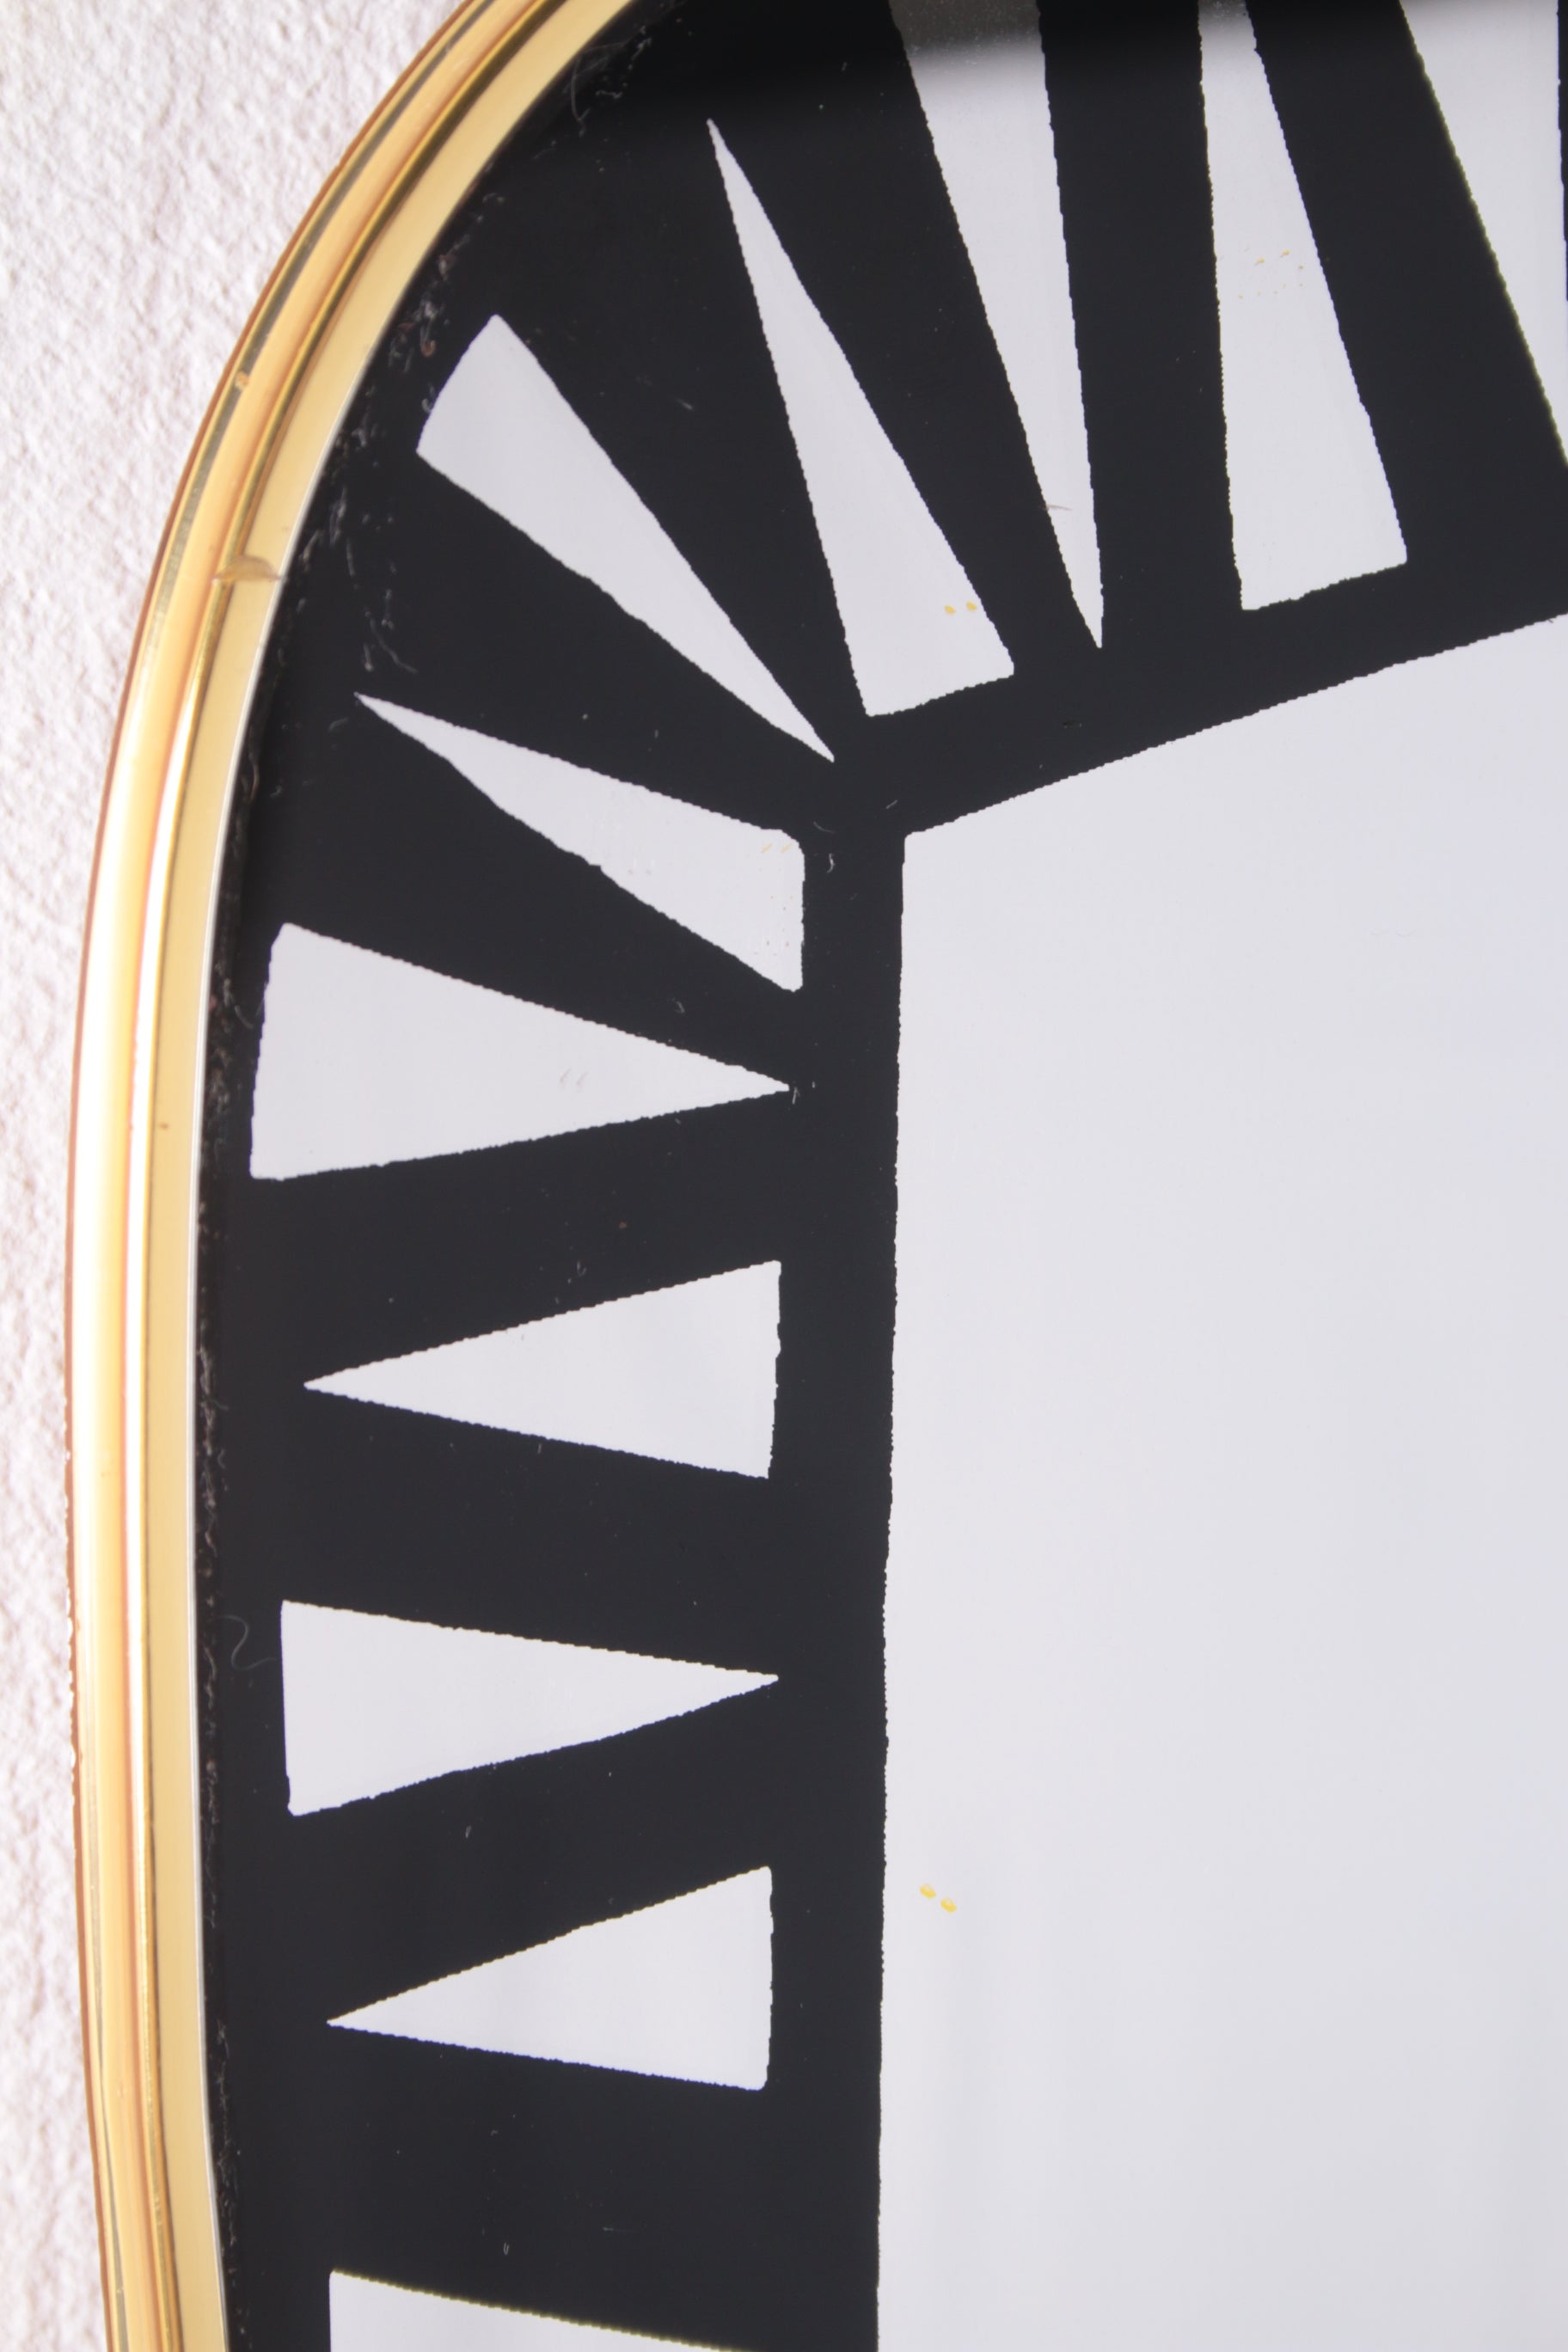 Grote spiegel ontwerp van Tacchini Dorian jaren70 detail rand boven